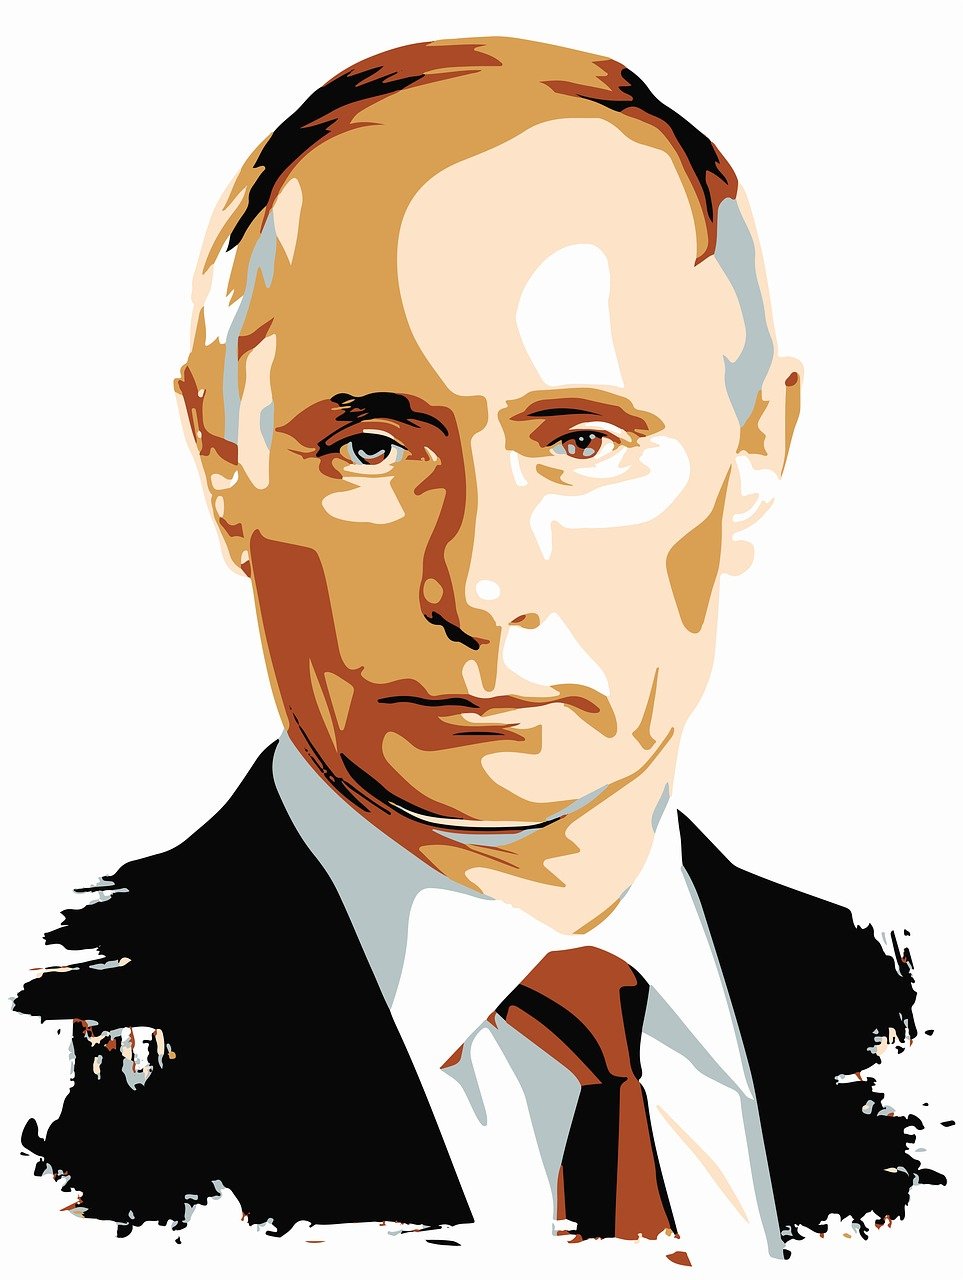 Lejos de conseguir una victoria rápida, la "operación militar especial" de Putin se ha convertido en un sangriento camino que Rusia podría perder. Foto: Pixabay.